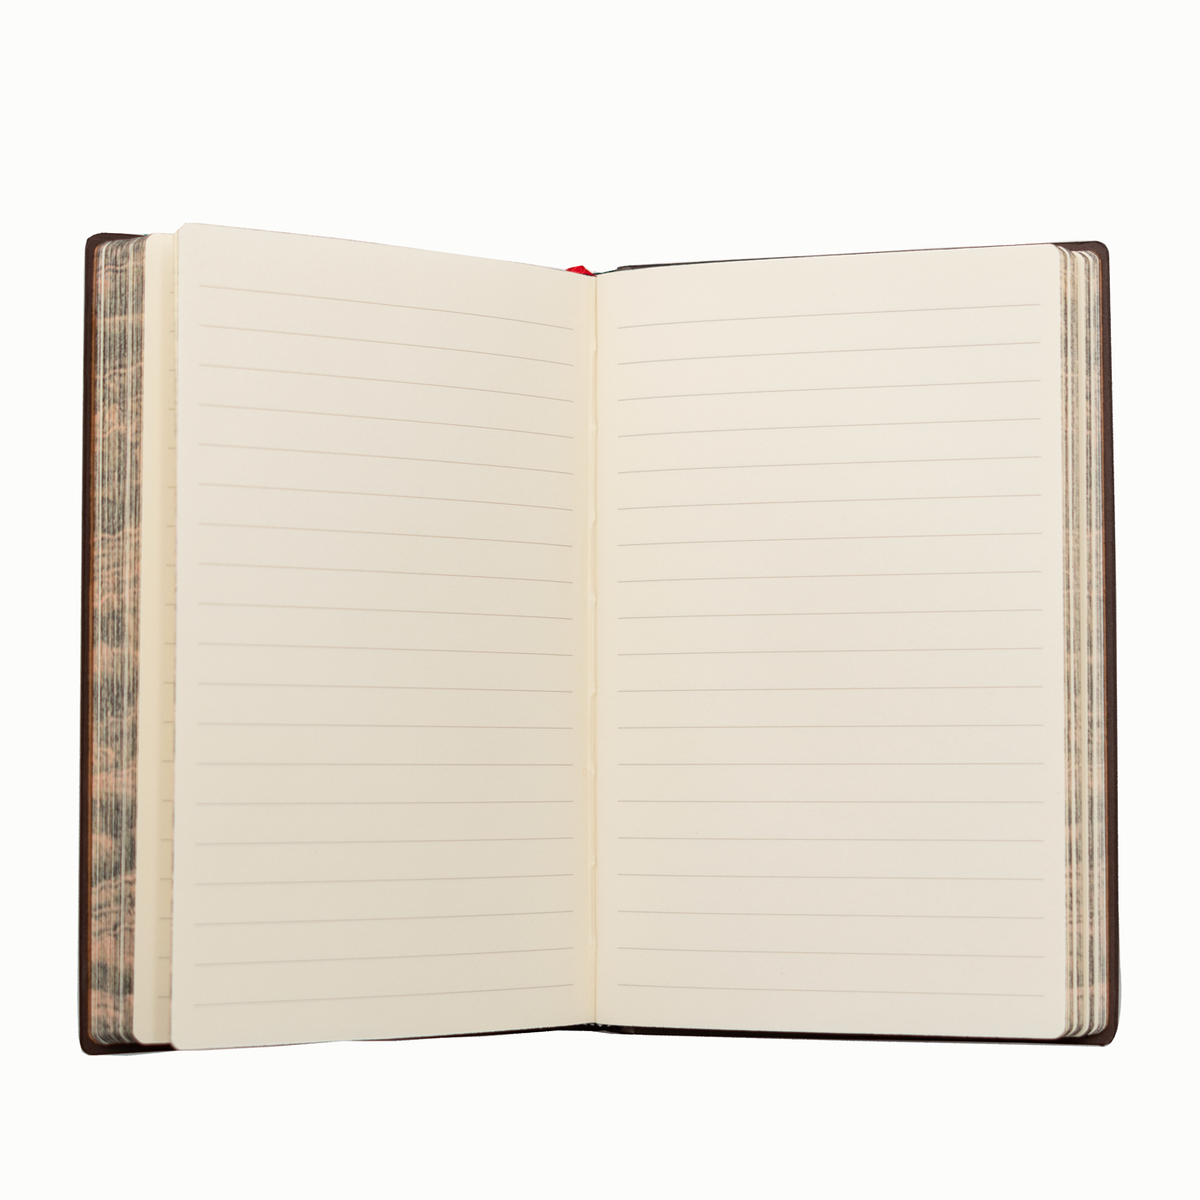 Banana Journal, Blank Journal, Sketch Journal, Blank Notebook, Blank P –  littlepaperies